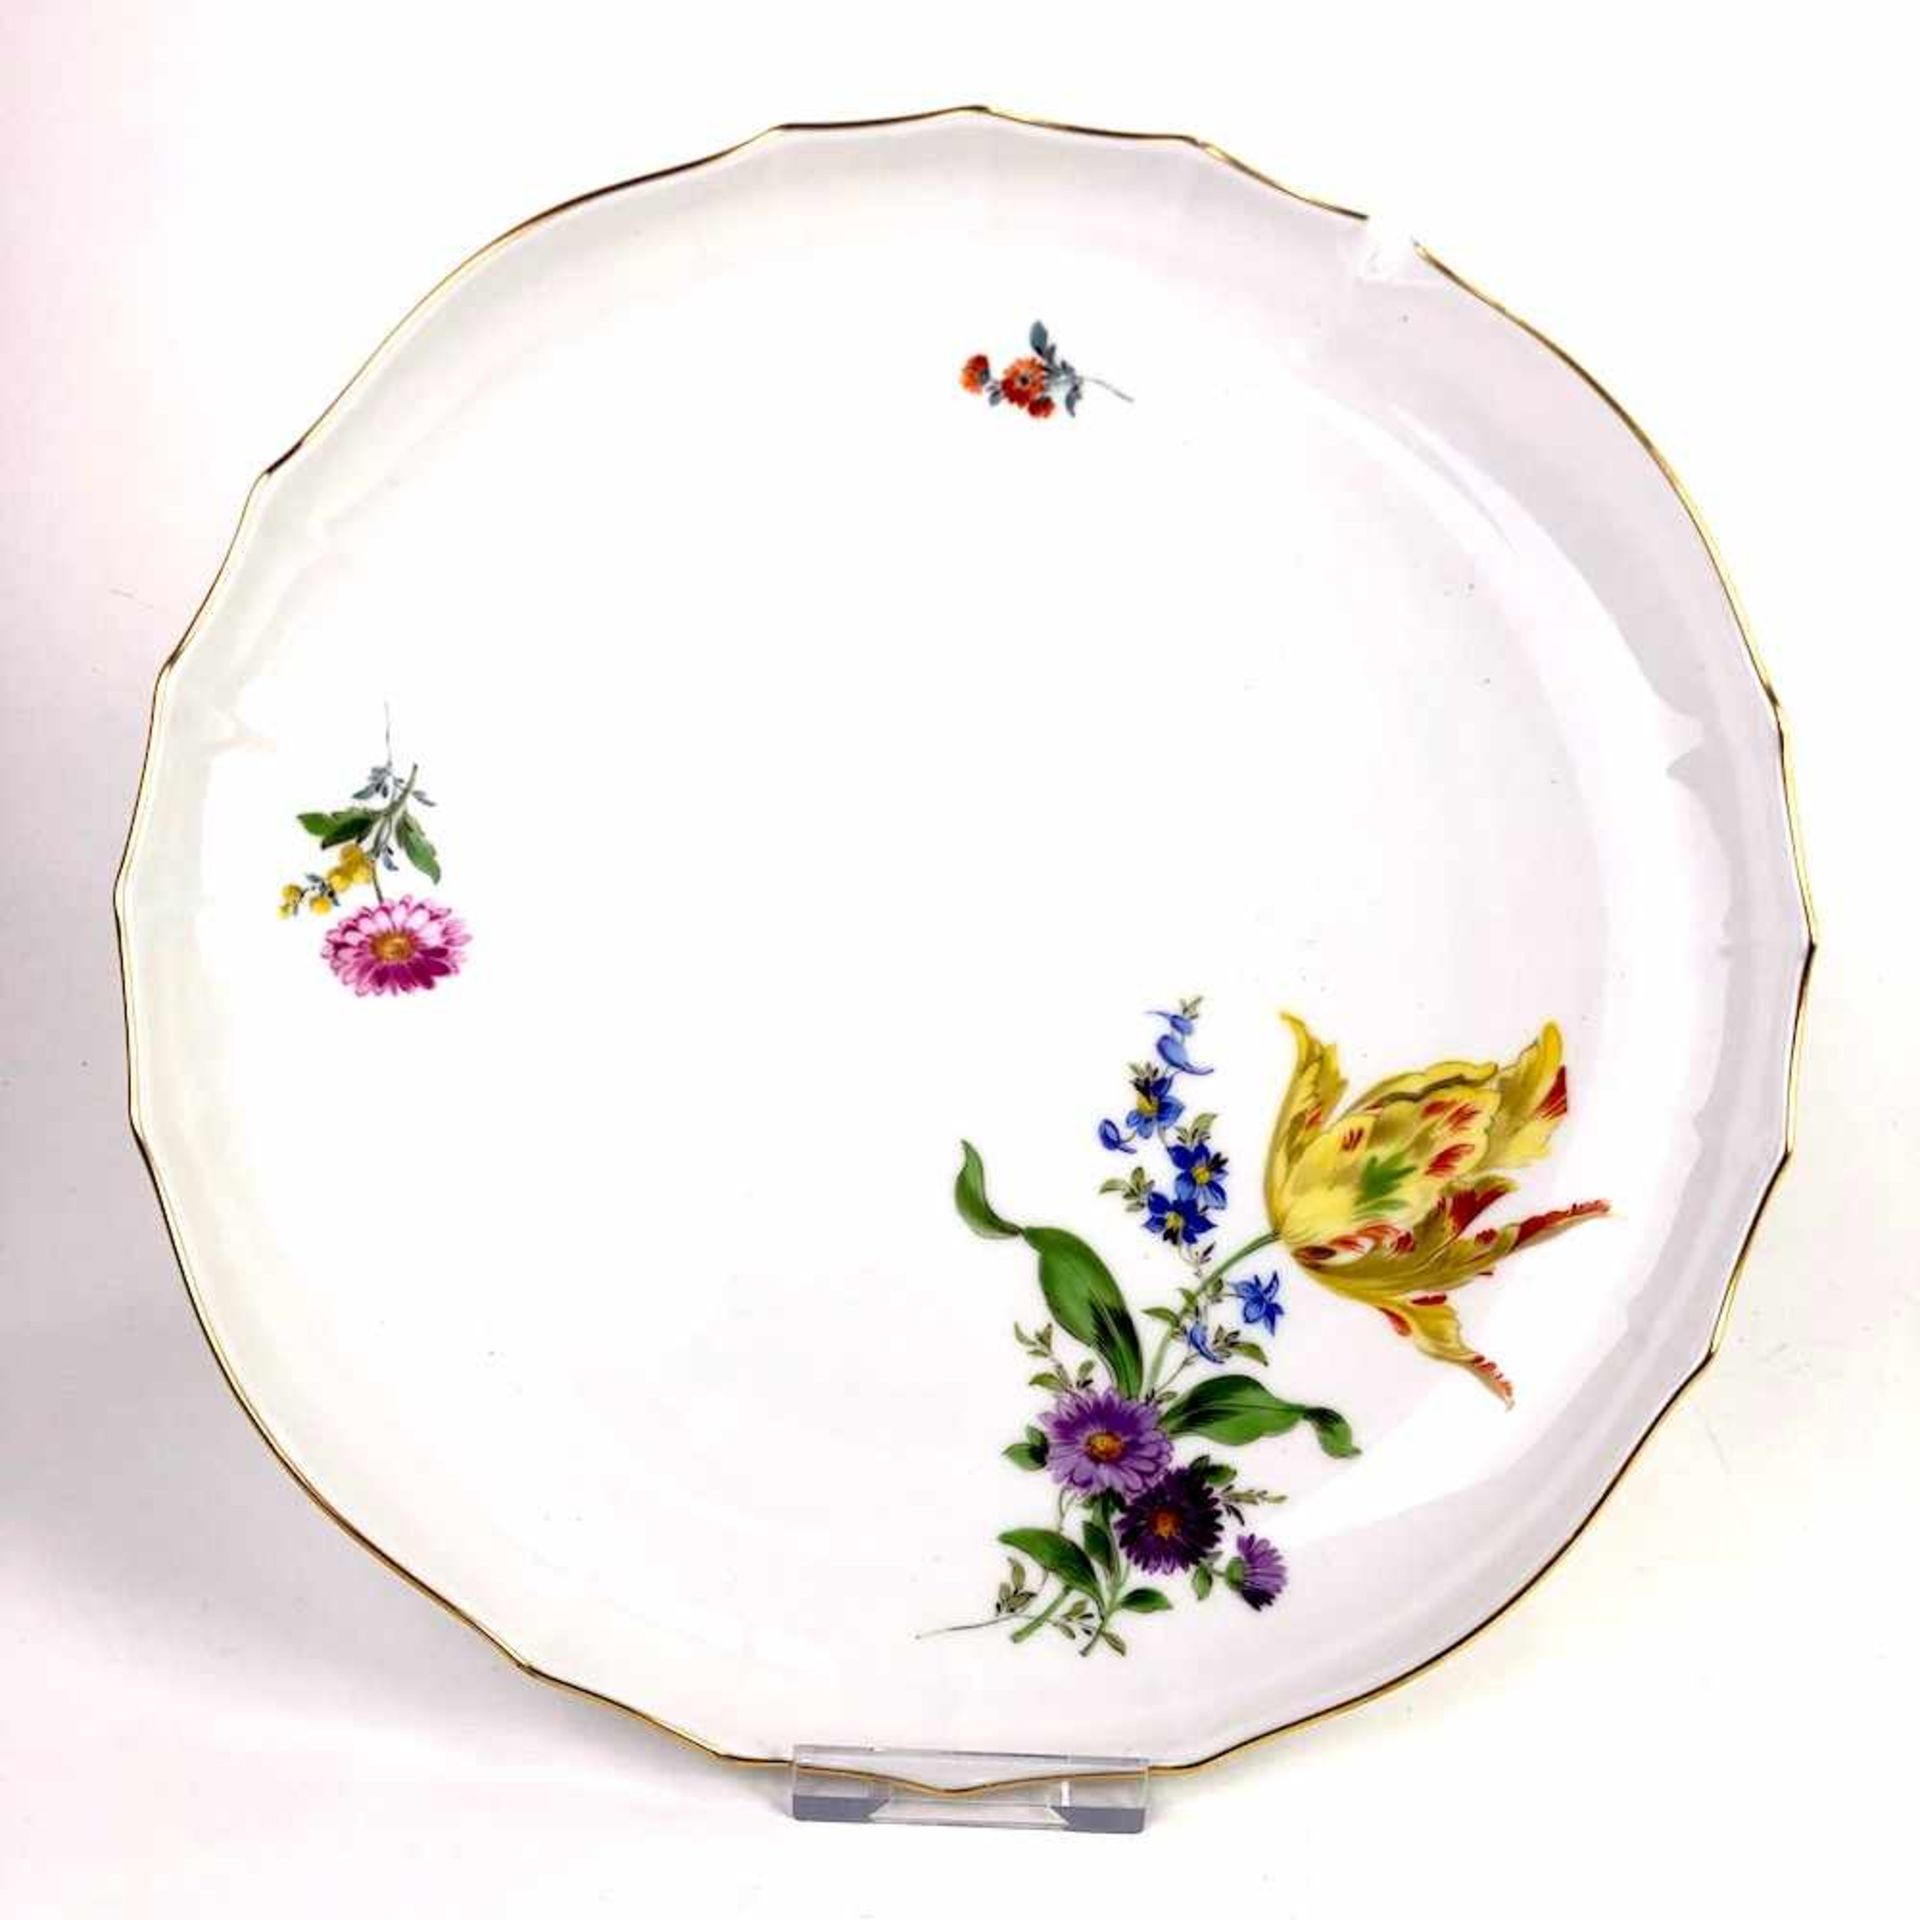 Rundschale / Anbietschale: Meissen Porzellan, Dekor Blume 3, Goldrand.Kuchenplatte rund, in der Form